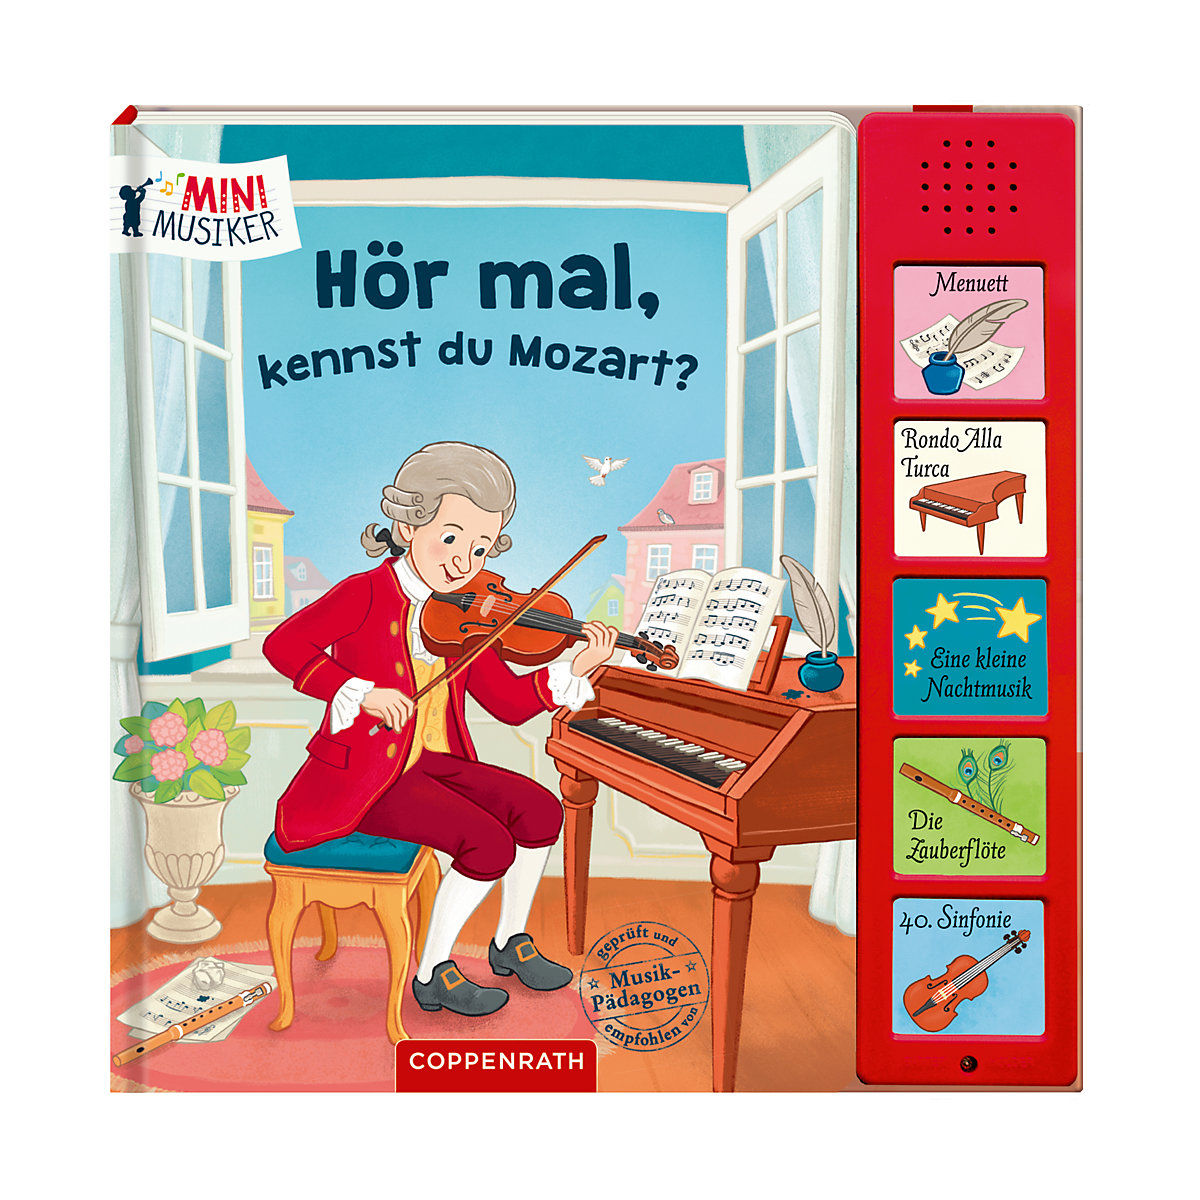 Coppenrath Verlag Hör mal kennst du Mozart?